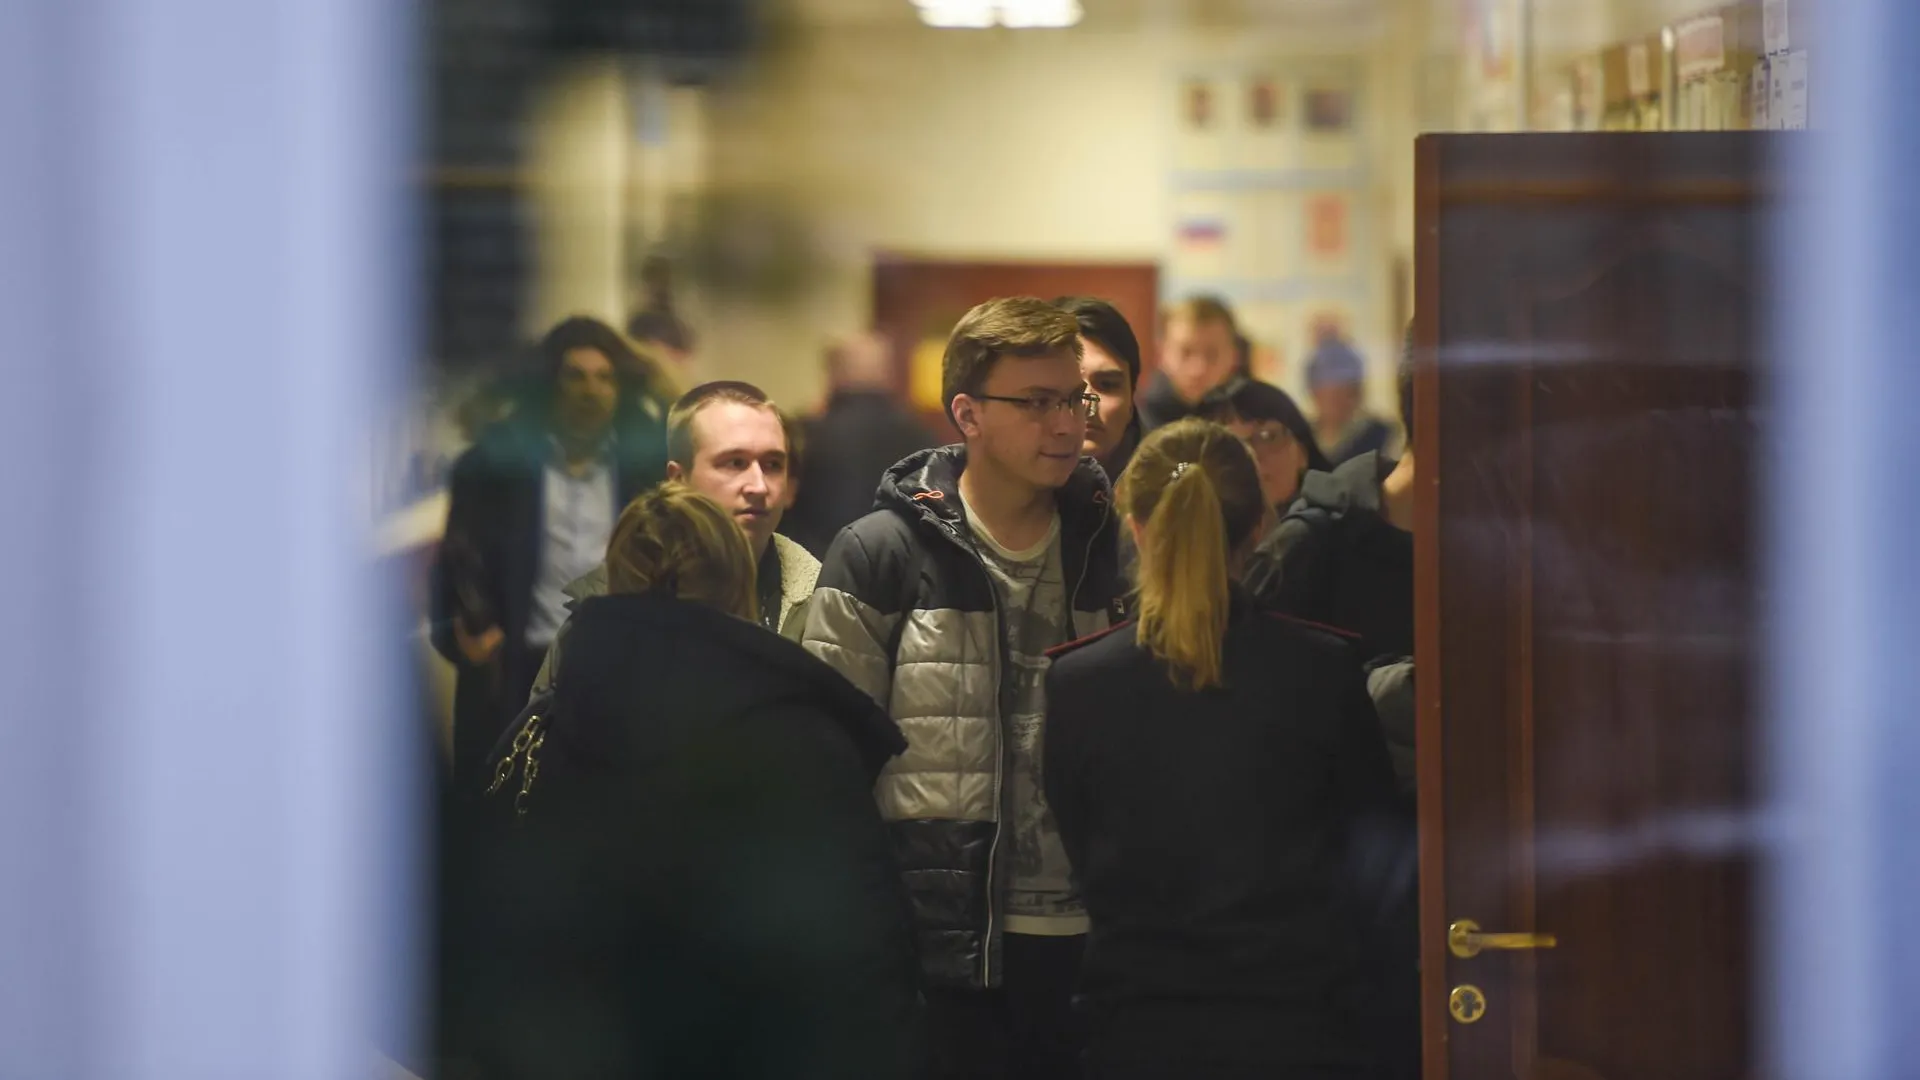 Студенты начали выходить из здания колледжа в Москве, где был убит преподаватель